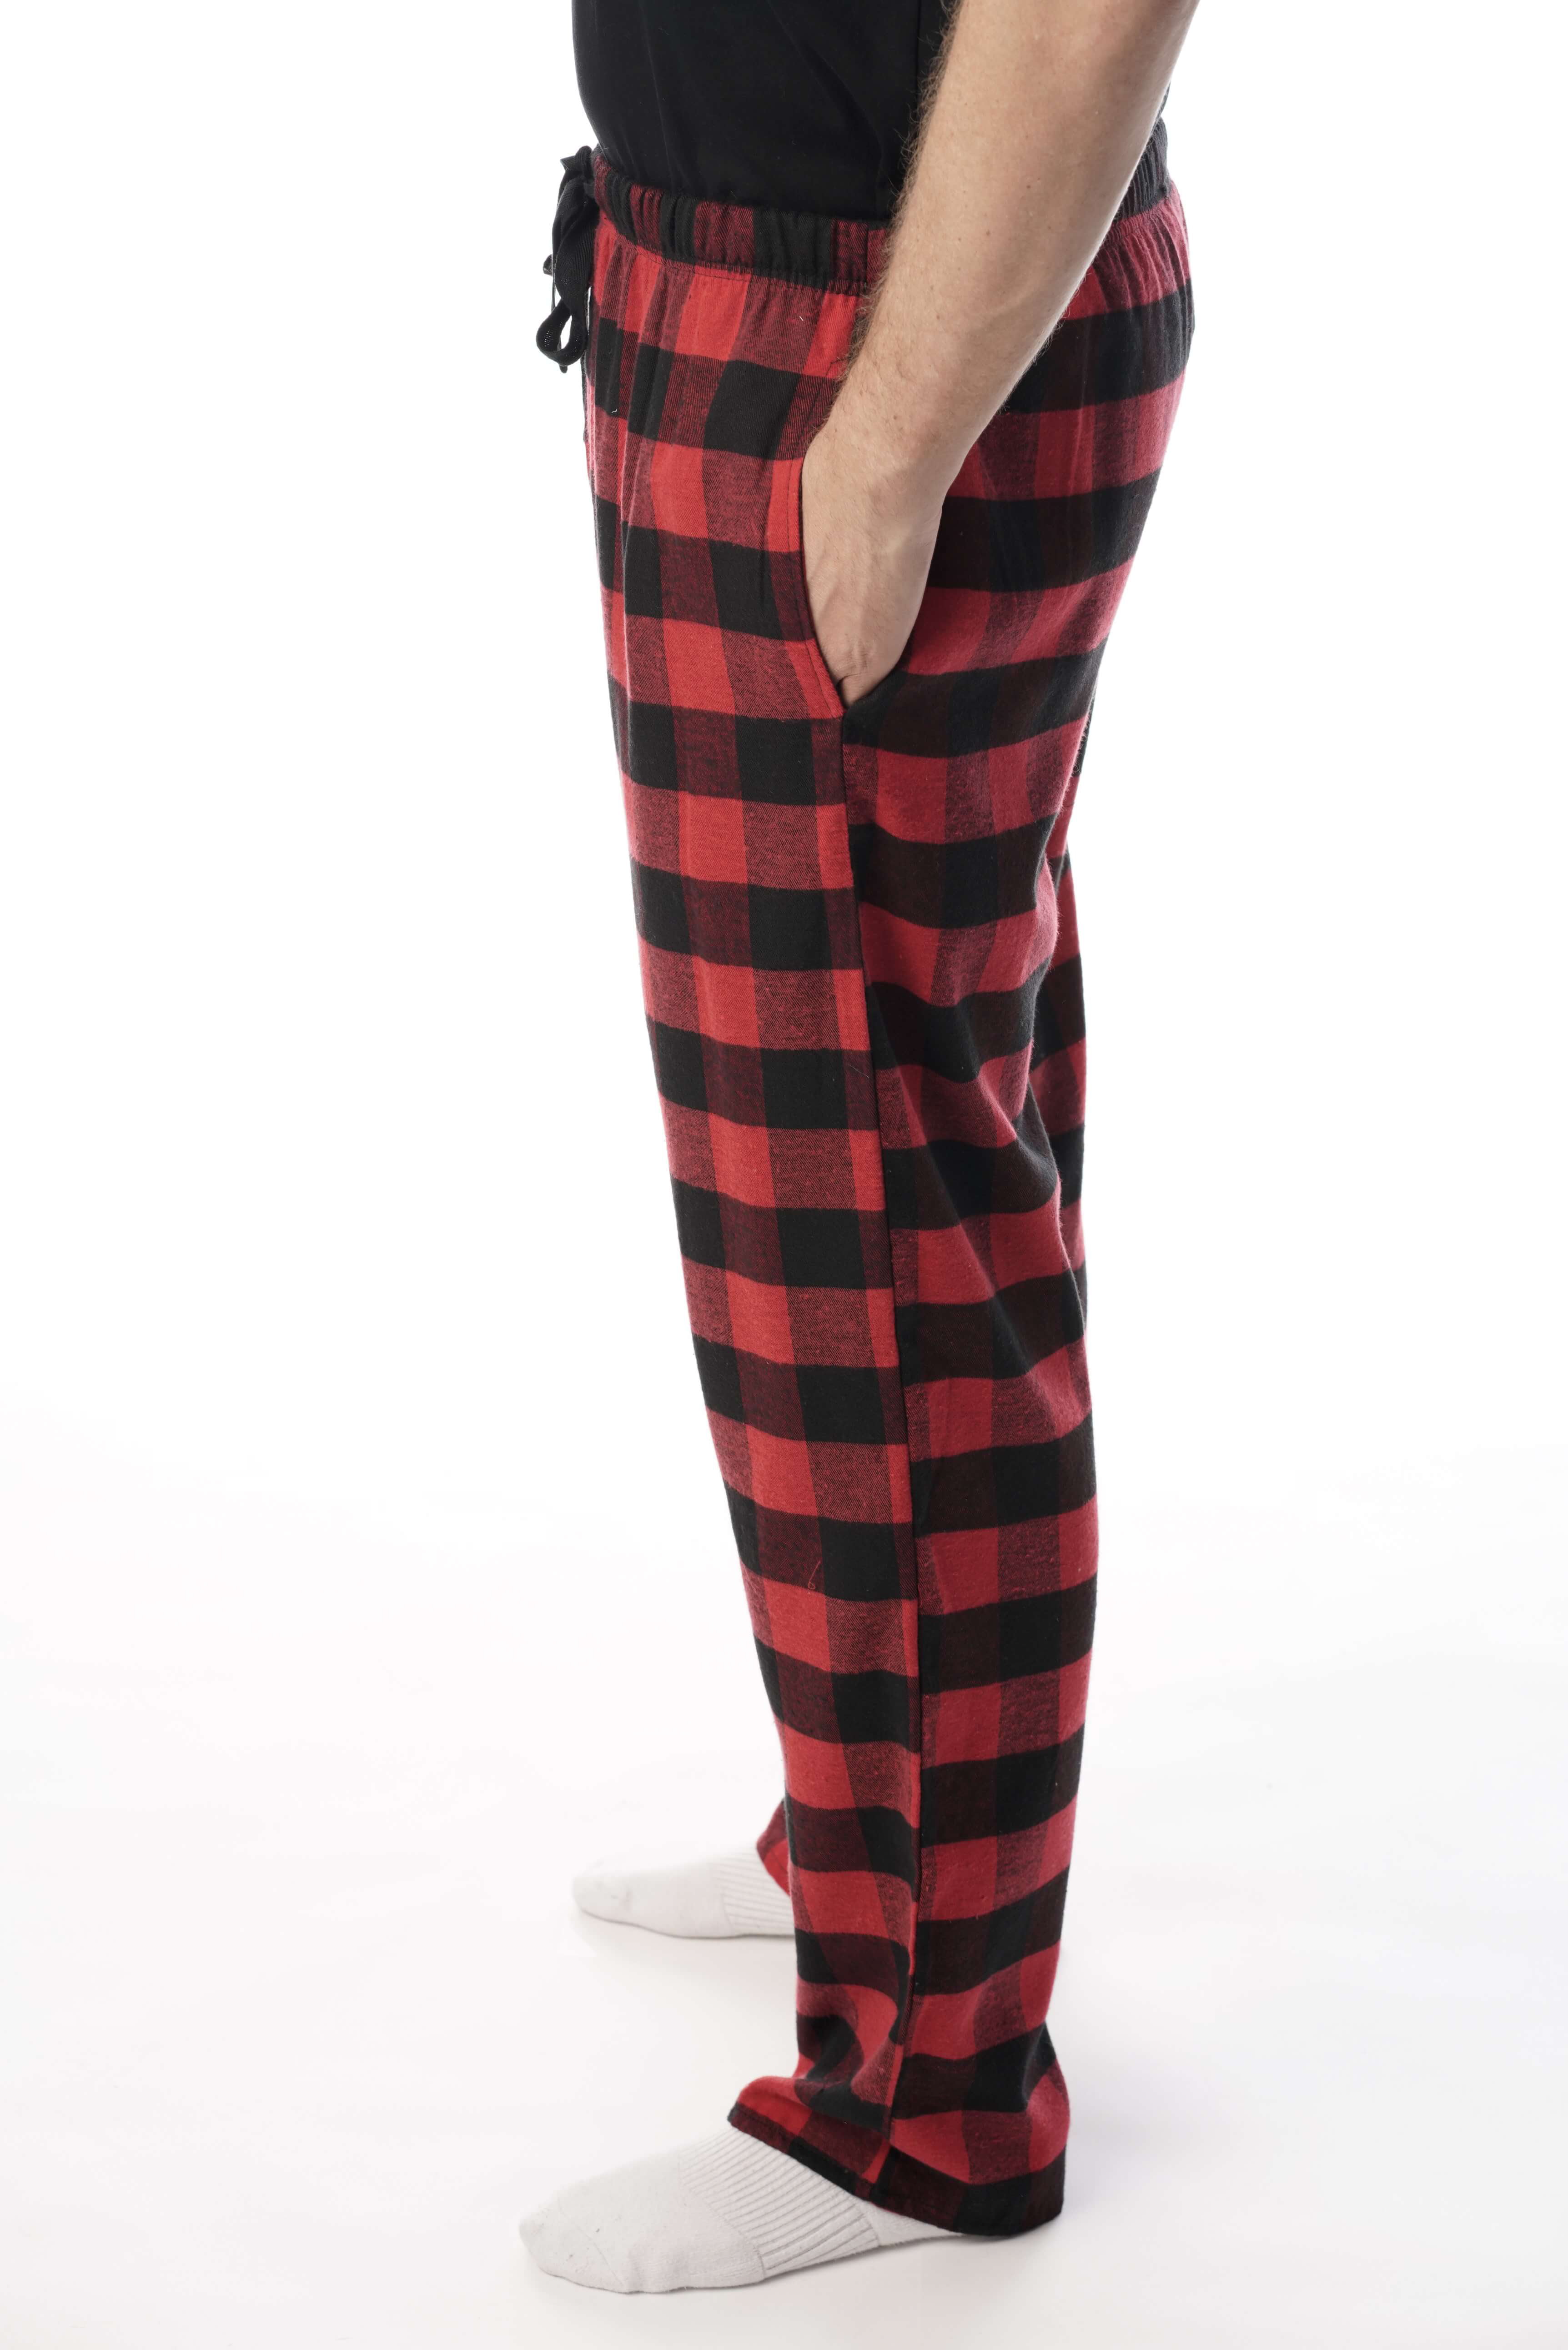 Arctic Trail Men's Red & Black Plaid Flannel Pajama Pants, Size L